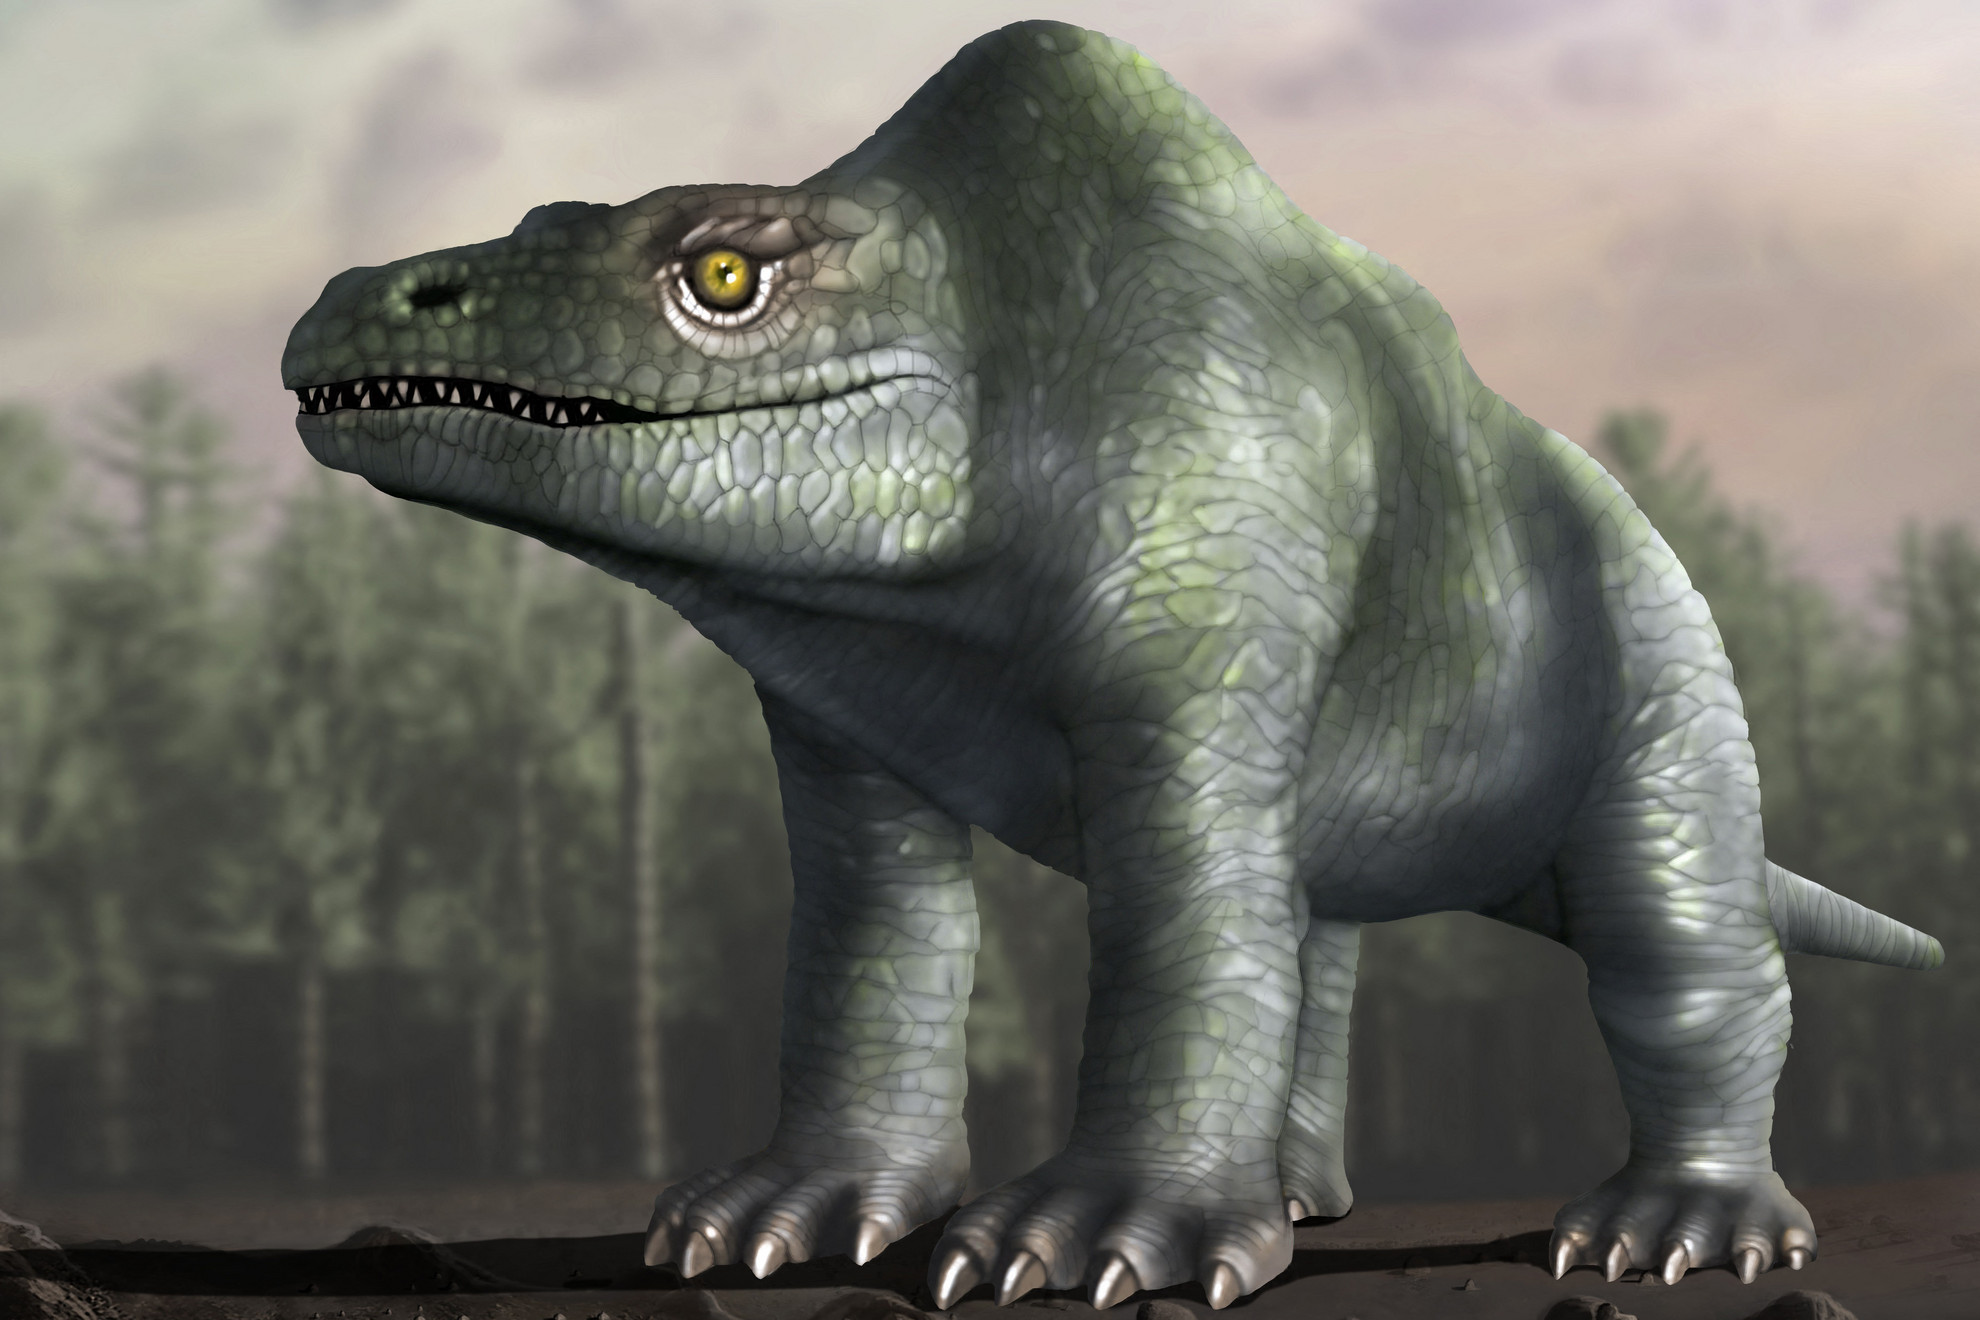 Ez az illusztráció úgy mutatja a megalosaurust, ahogyan azt eredetileg elképzelték, még a XIX. században